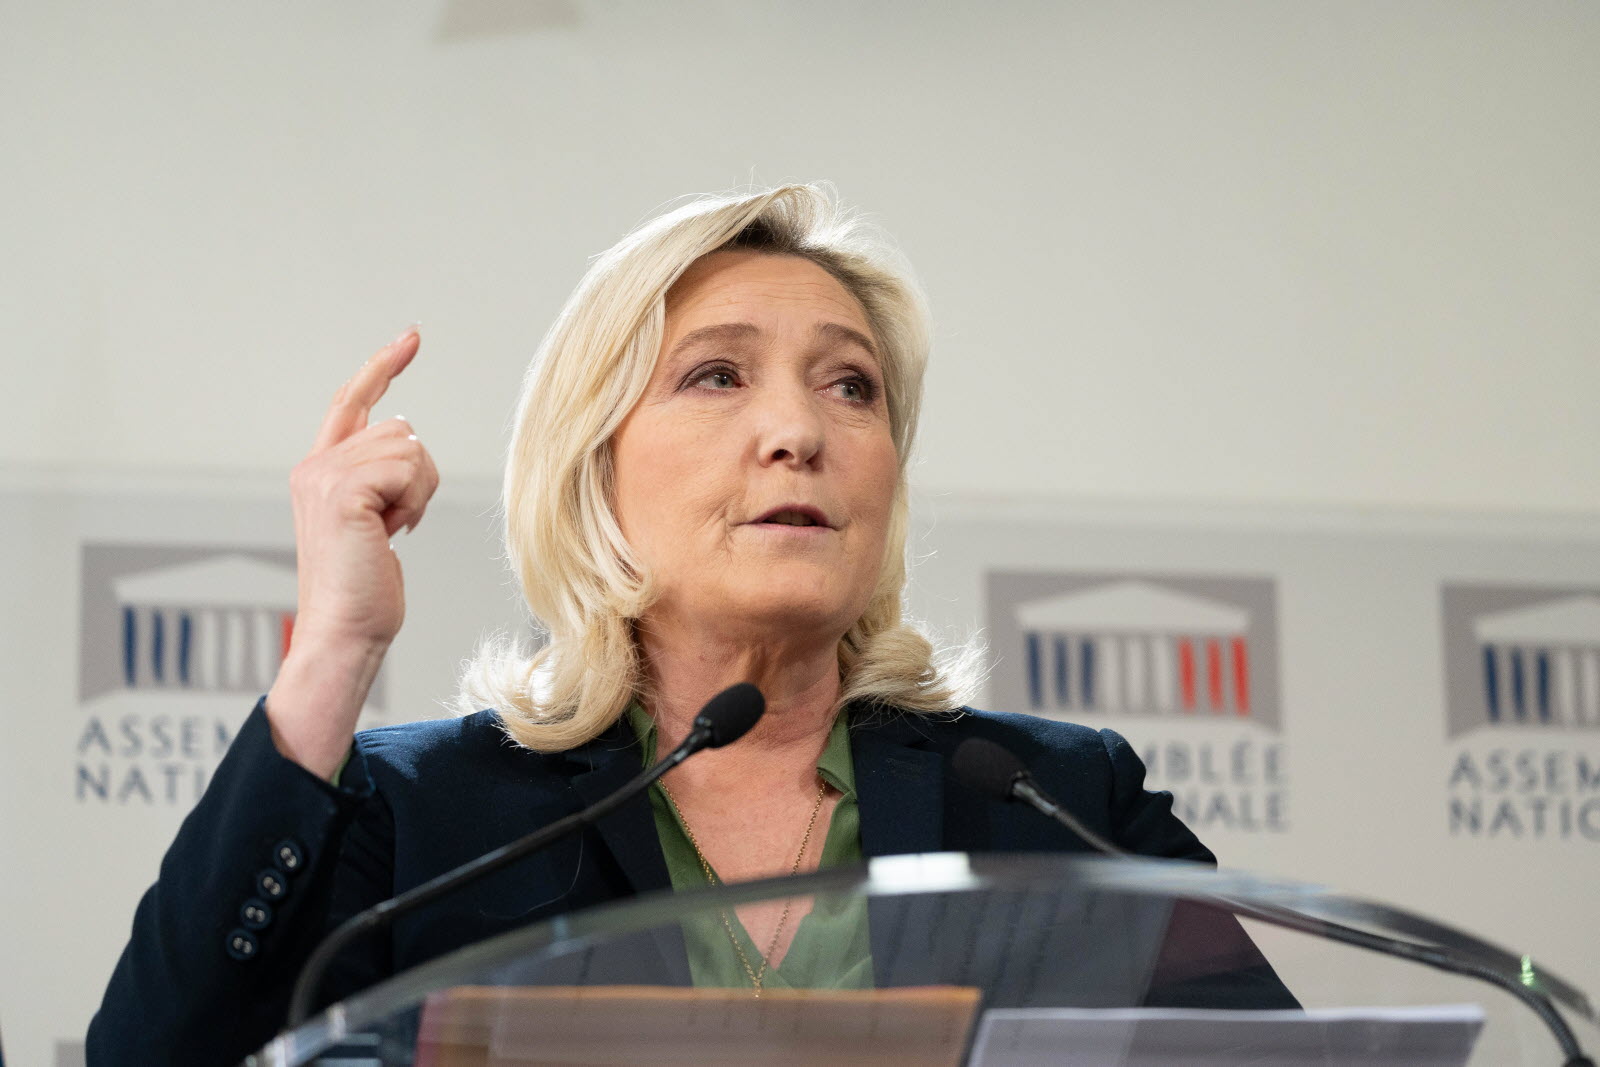 France-Sondage : Pour 7 citoyens sur 10 il y a trop d’immigrés, Le Pen est la solution, Bonjour l’ambiance en 2027!